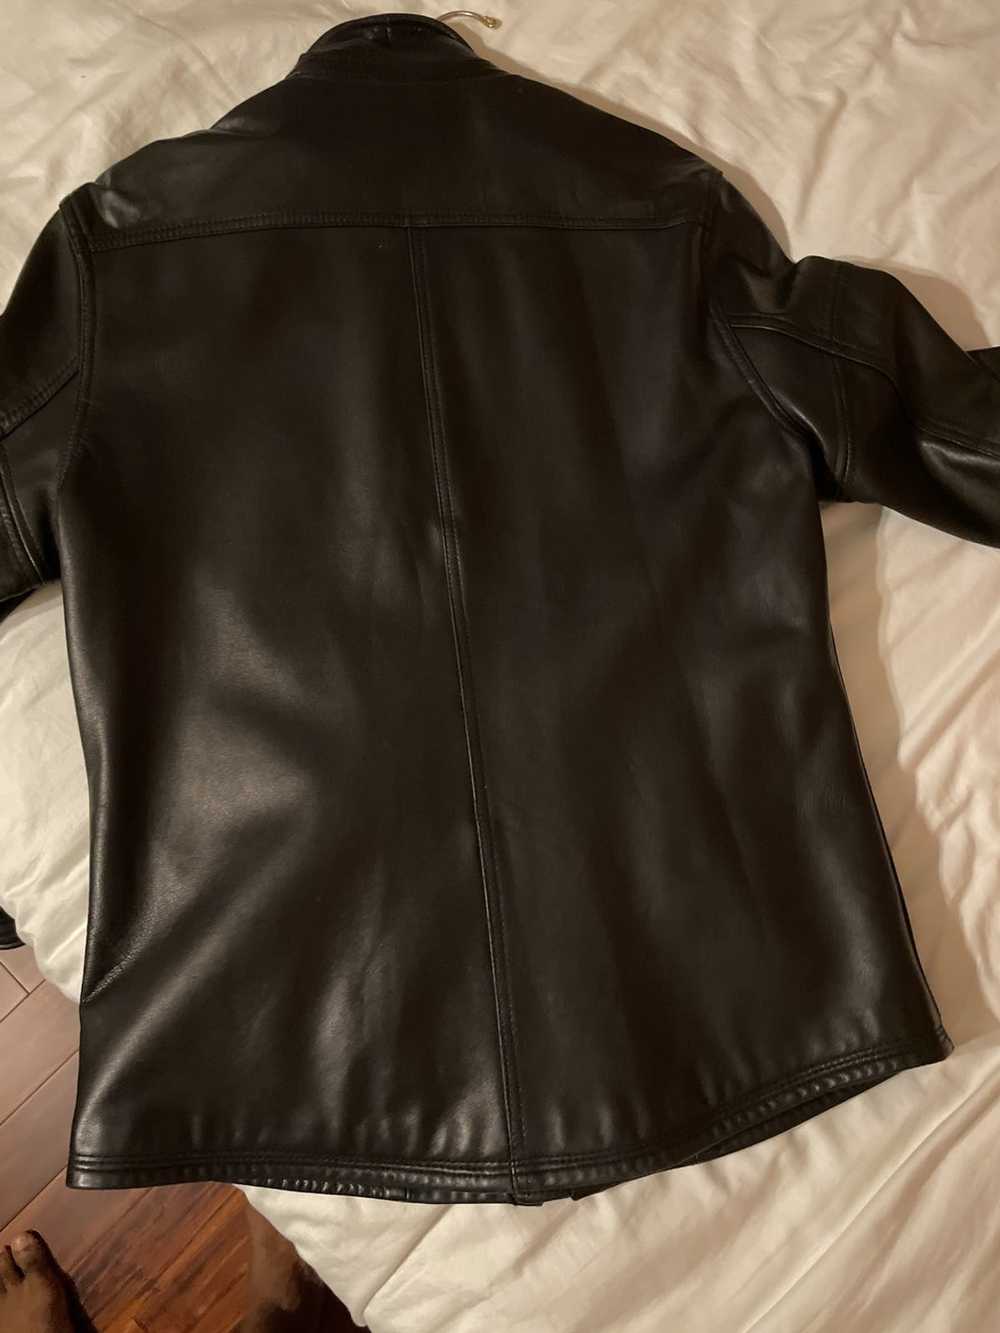 Rogue Leather shirt Jacket - image 8